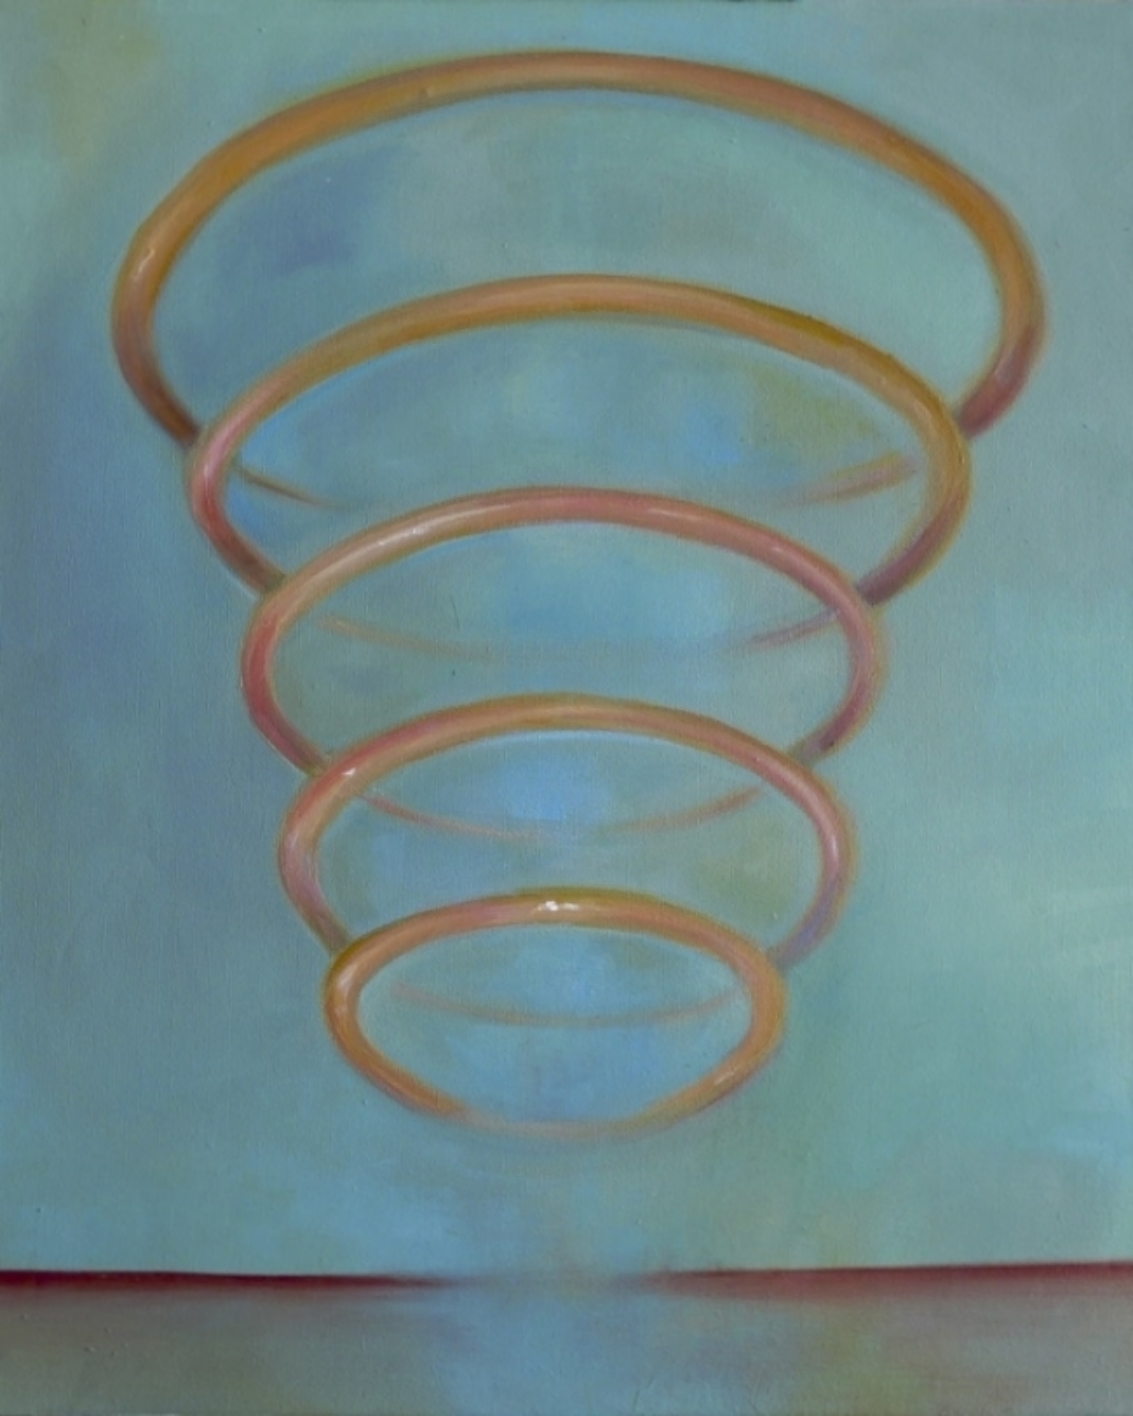  Thin Air/ Oil on Canvas 55 x 45 cm 2015 